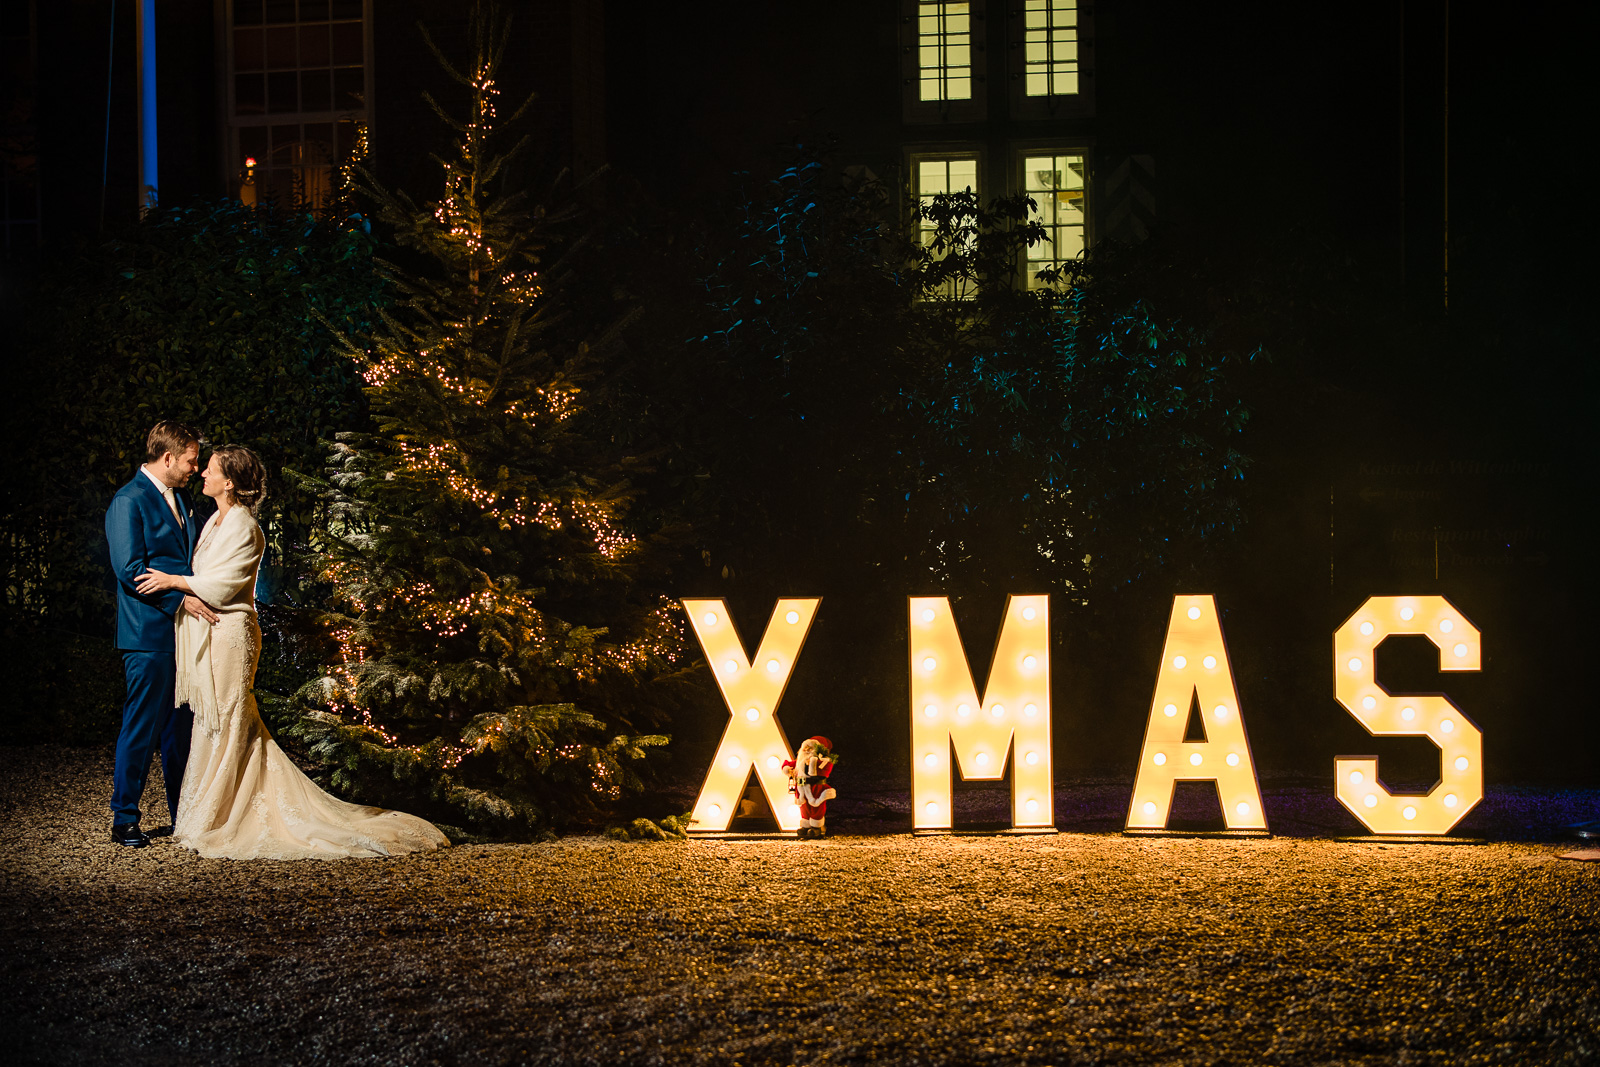 Trouwfotograaf Leiden kerst fotoshoot bruidspaar buiten bij licht letters